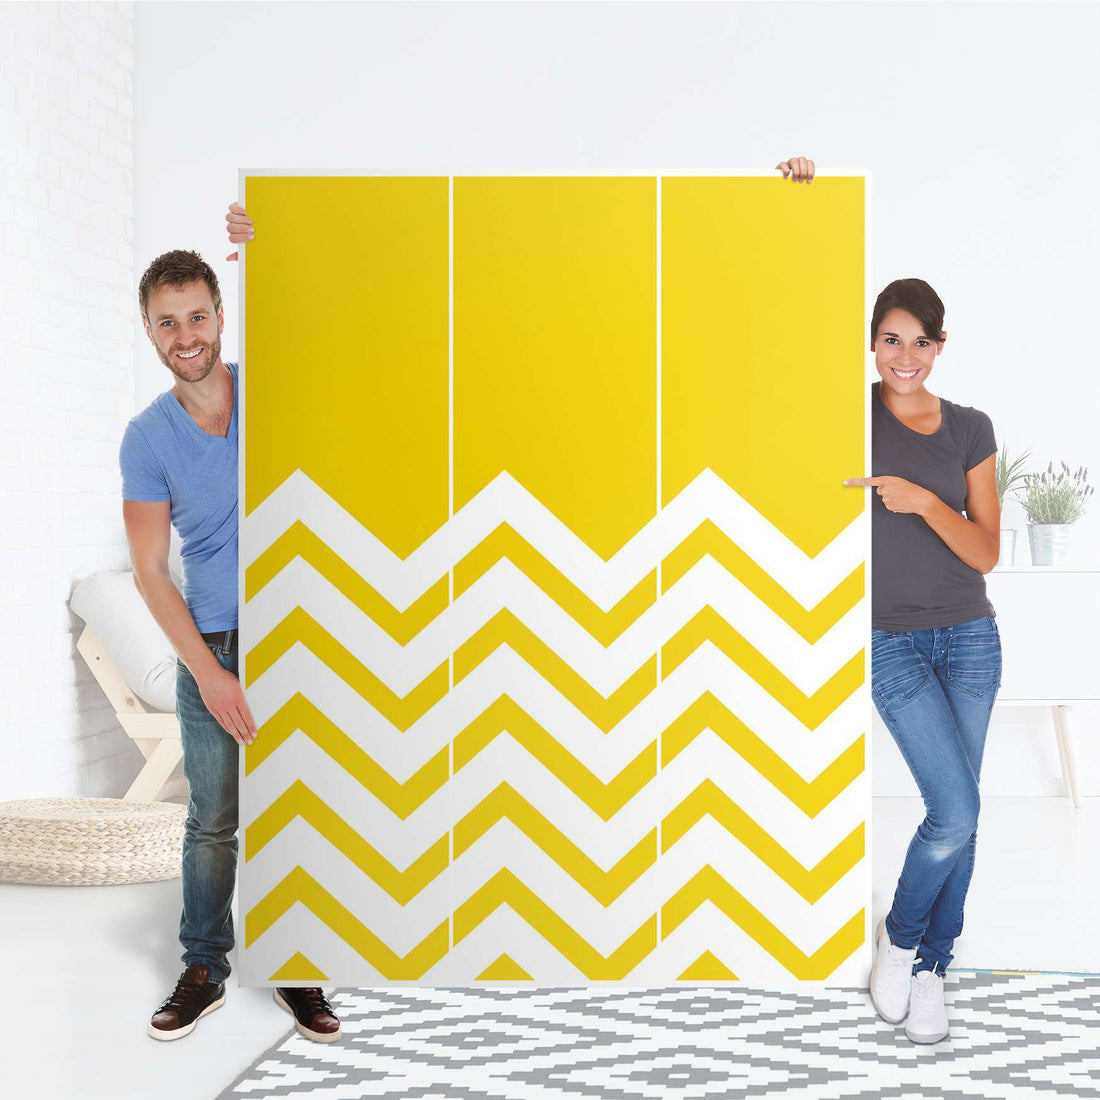 Folie für Möbel Gelbe Zacken - IKEA Pax Schrank 201 cm Höhe - 3 Türen - Folie